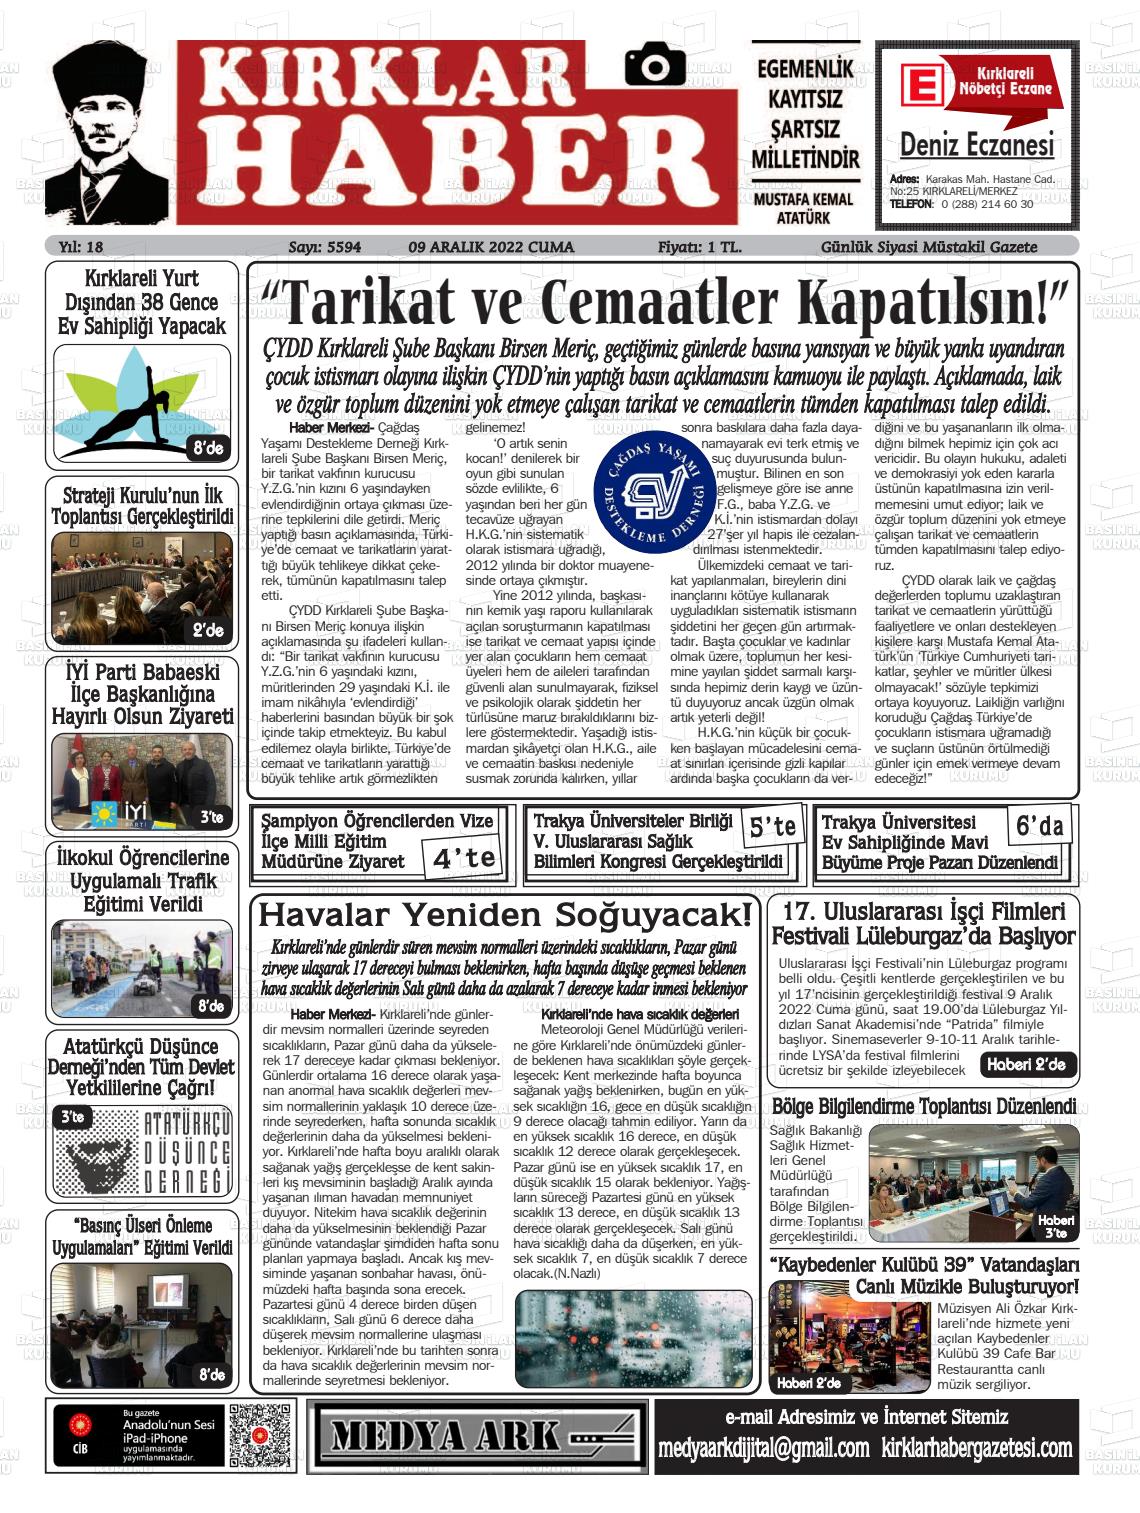 09 Aralık 2022 Kırklar Haber Gazete Manşeti